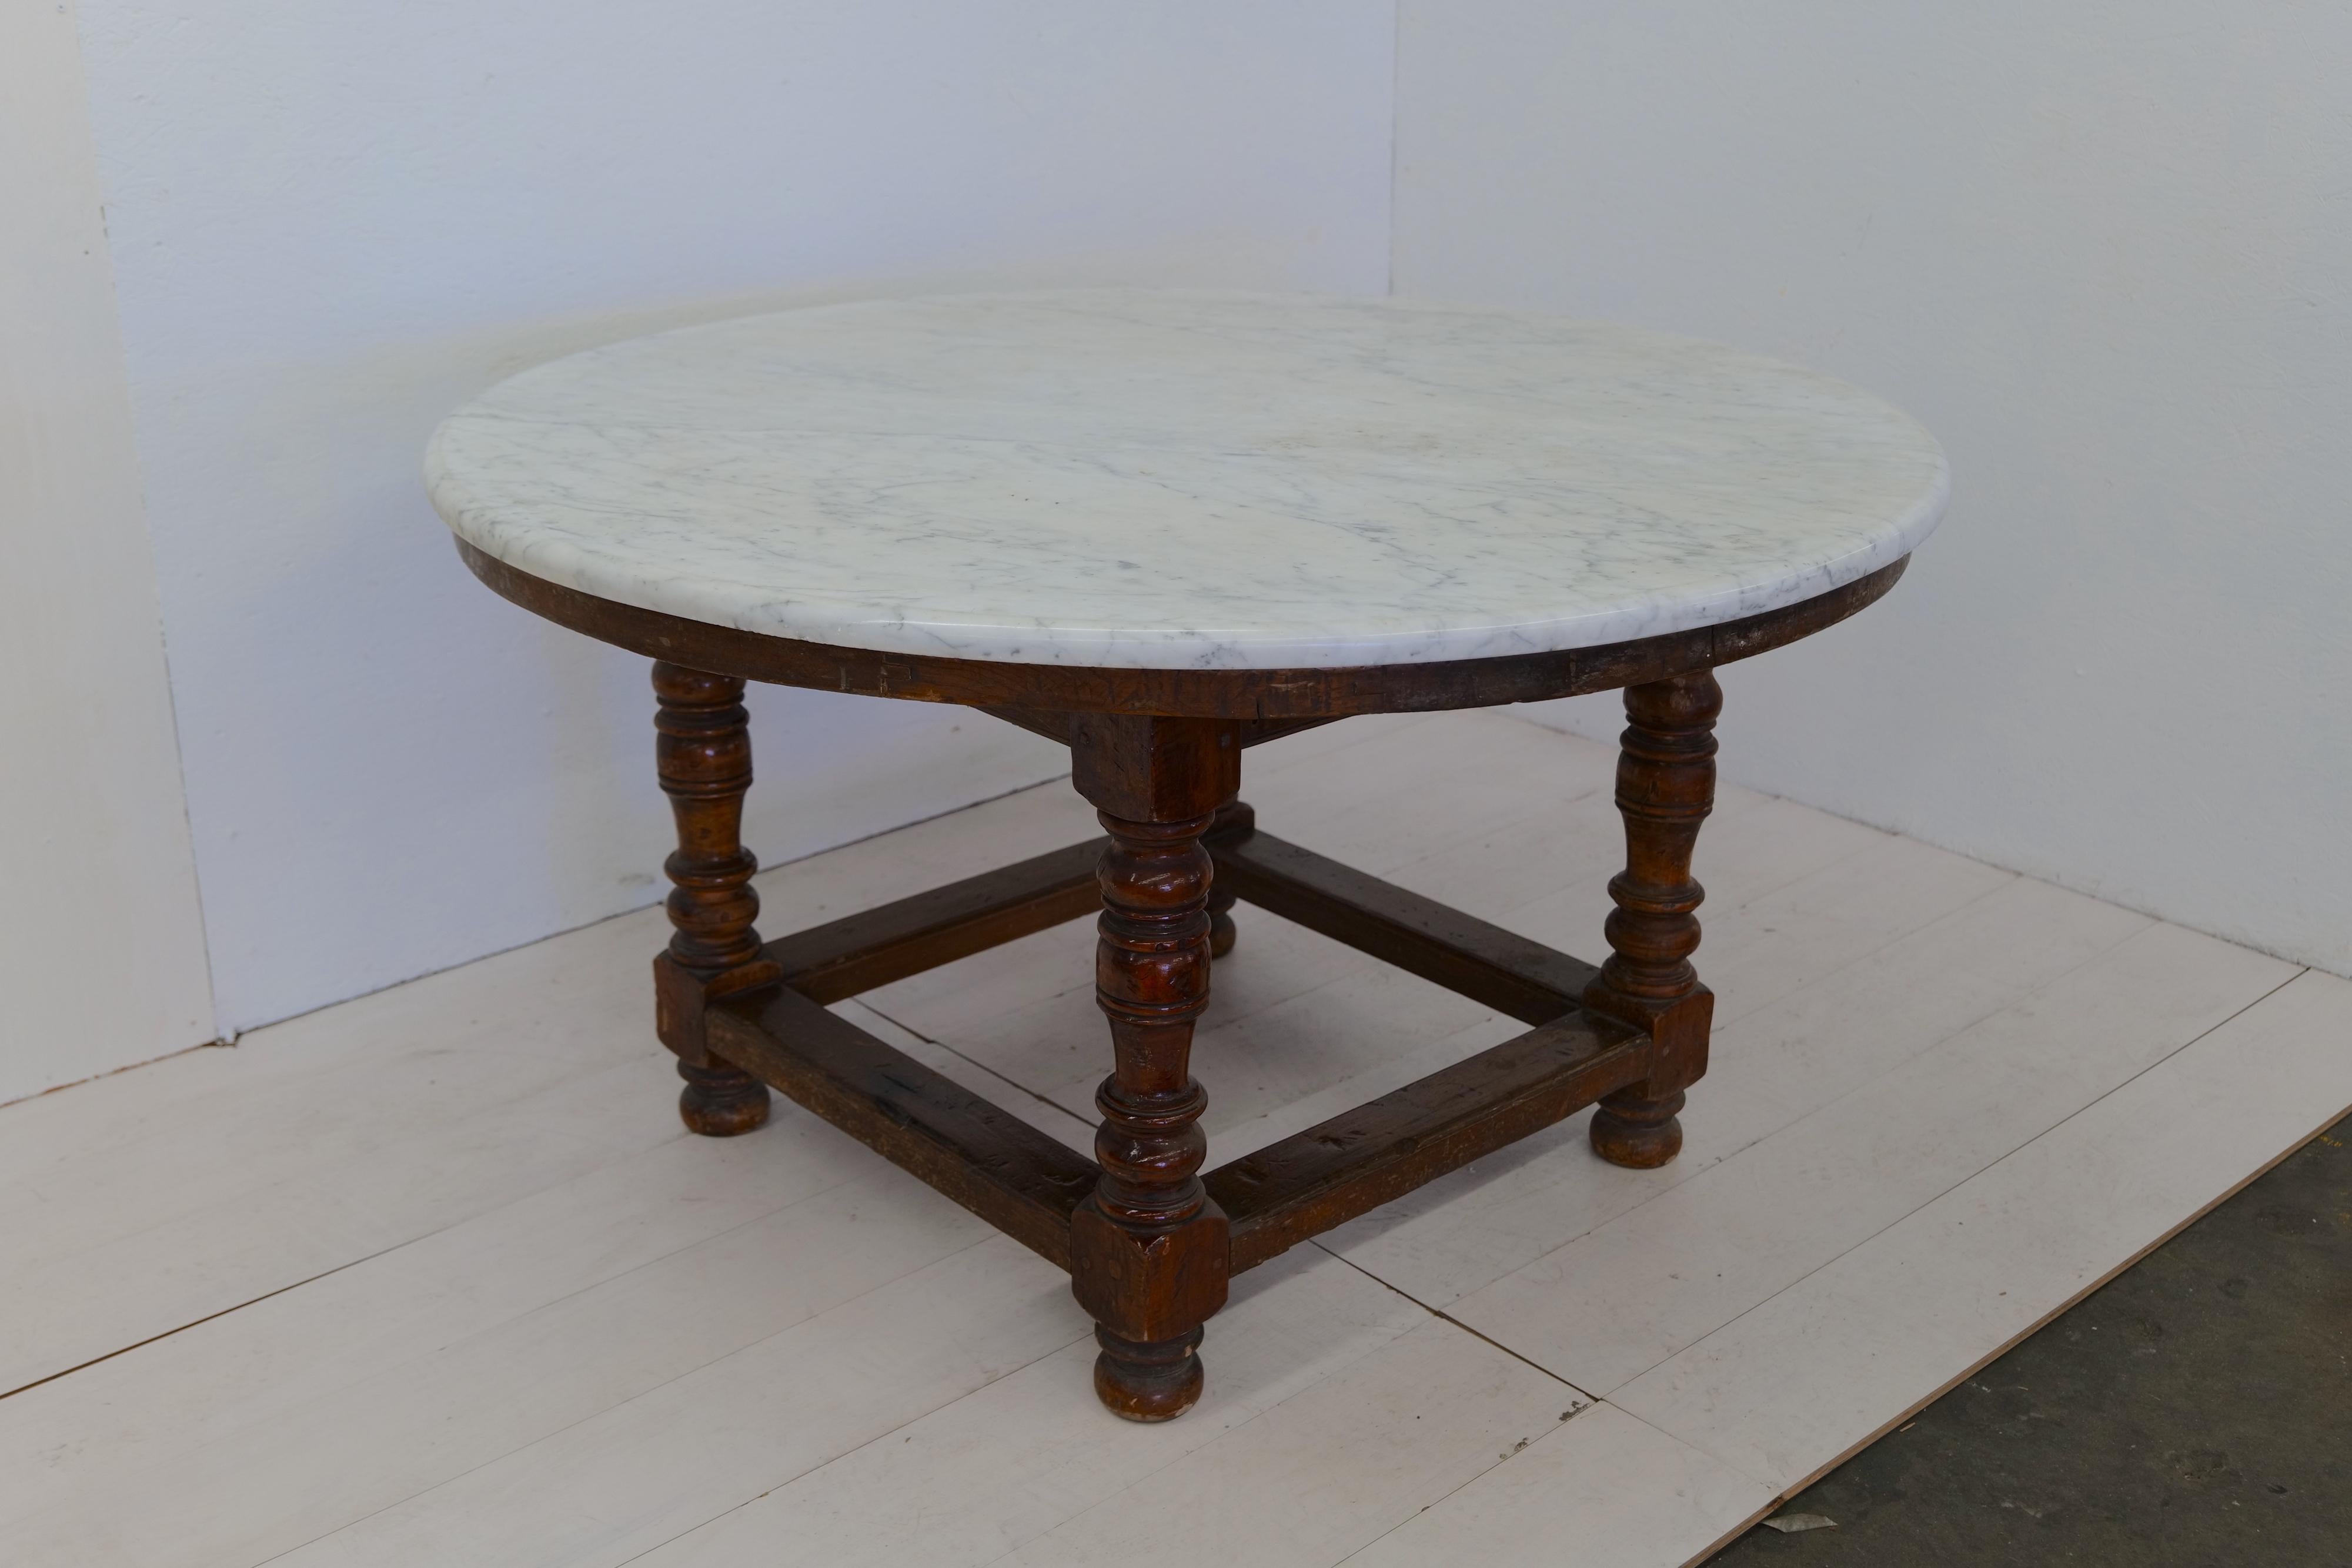 Der überdimensionale Esstisch aus Holz und Marmor aus dem 18. Jahrhundert ist ein großartiges und luxuriöses Möbelstück. Der Tisch verfügt über ein stabiles Holzgestell, das Stabilität und Halt bietet. Das Highlight dieses Esstisches ist seine